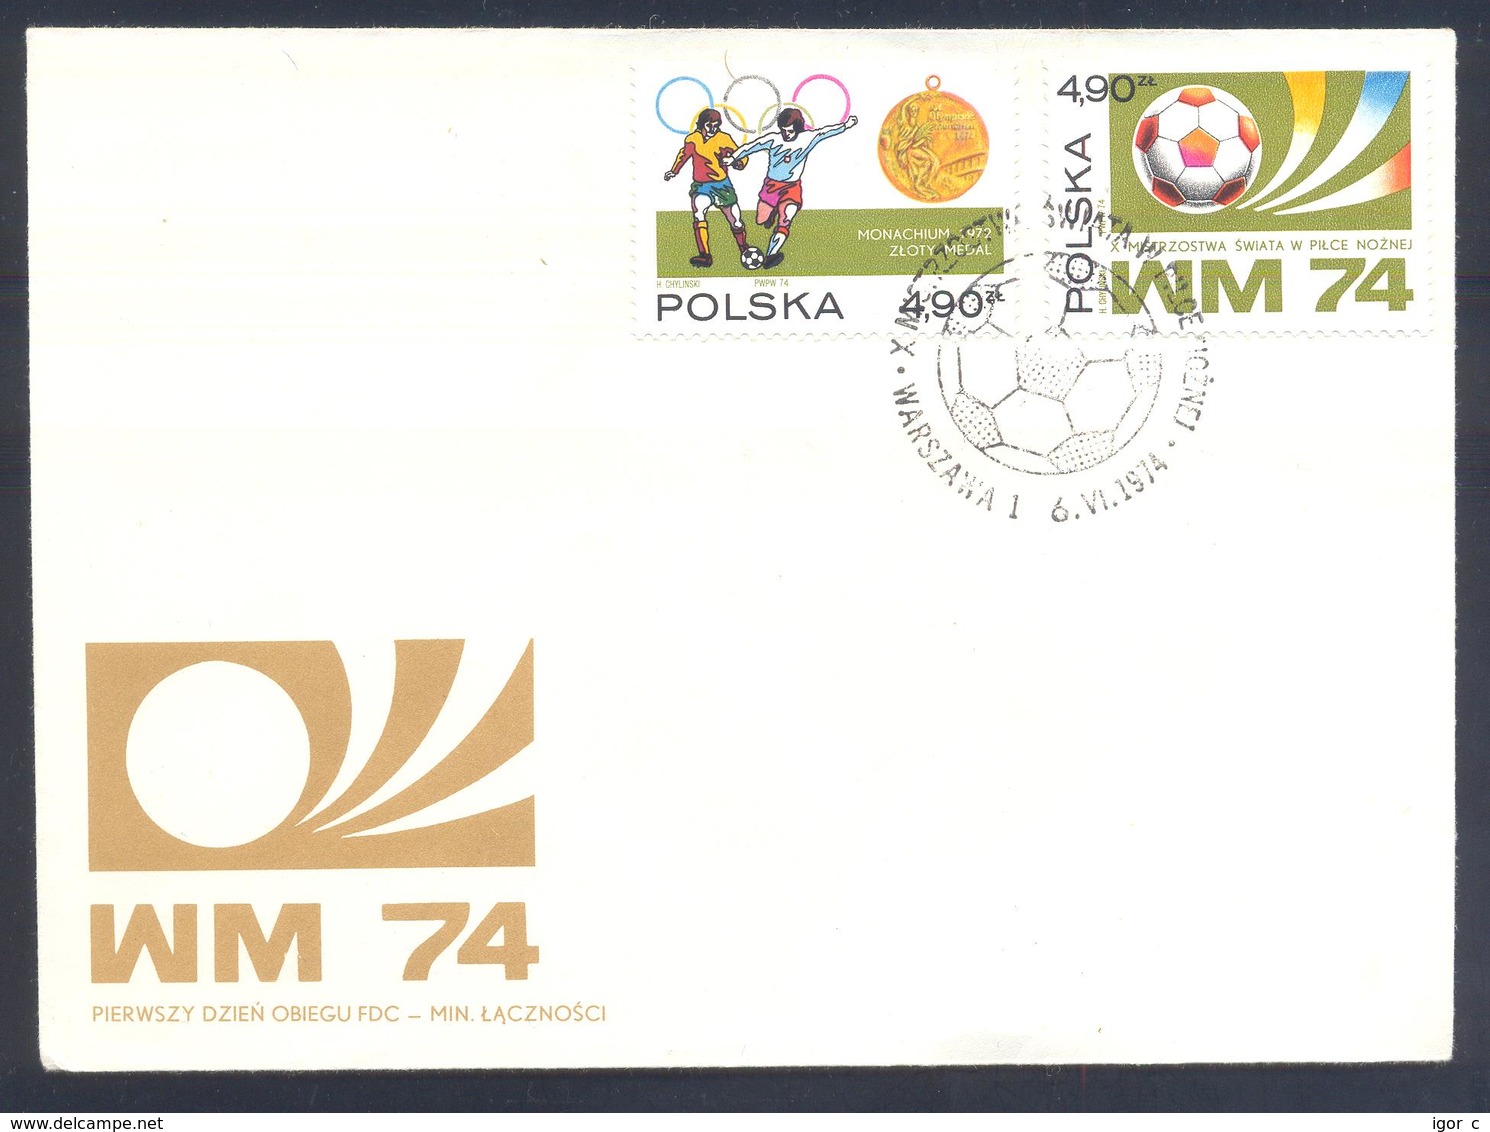 Poland 1974 Cover: Football Fussball Soccer Calcio Futbol: FIFA World Cup; - 1974 – Germania Ovest